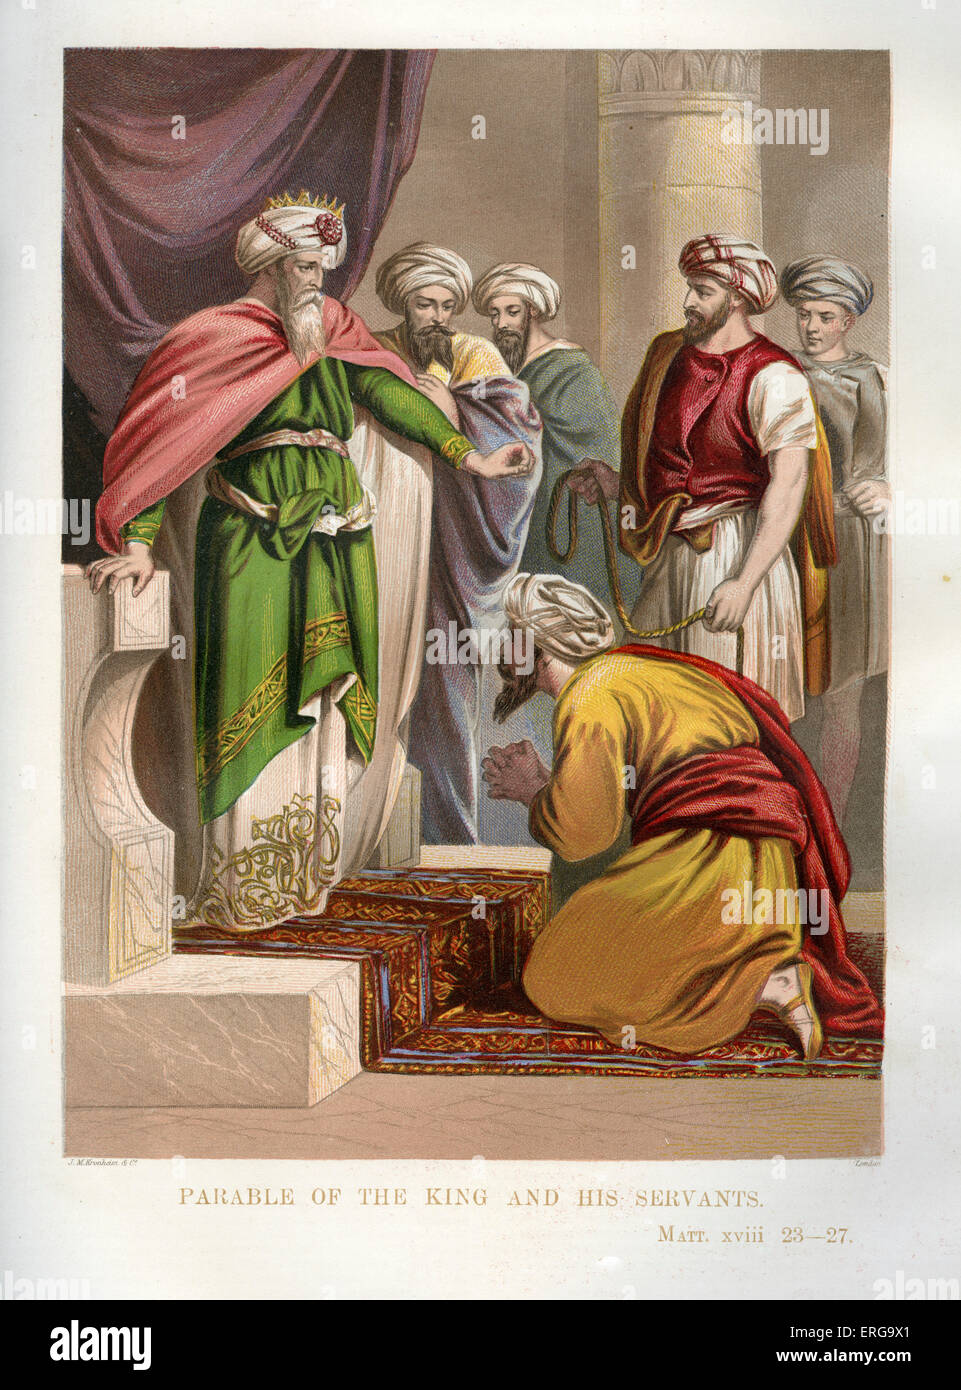 Gleichnis vom unbarmherzigen Knecht. Illustration zu Matthäus 18. 23 - 27. Gleichnis von Jesus. Stockfoto